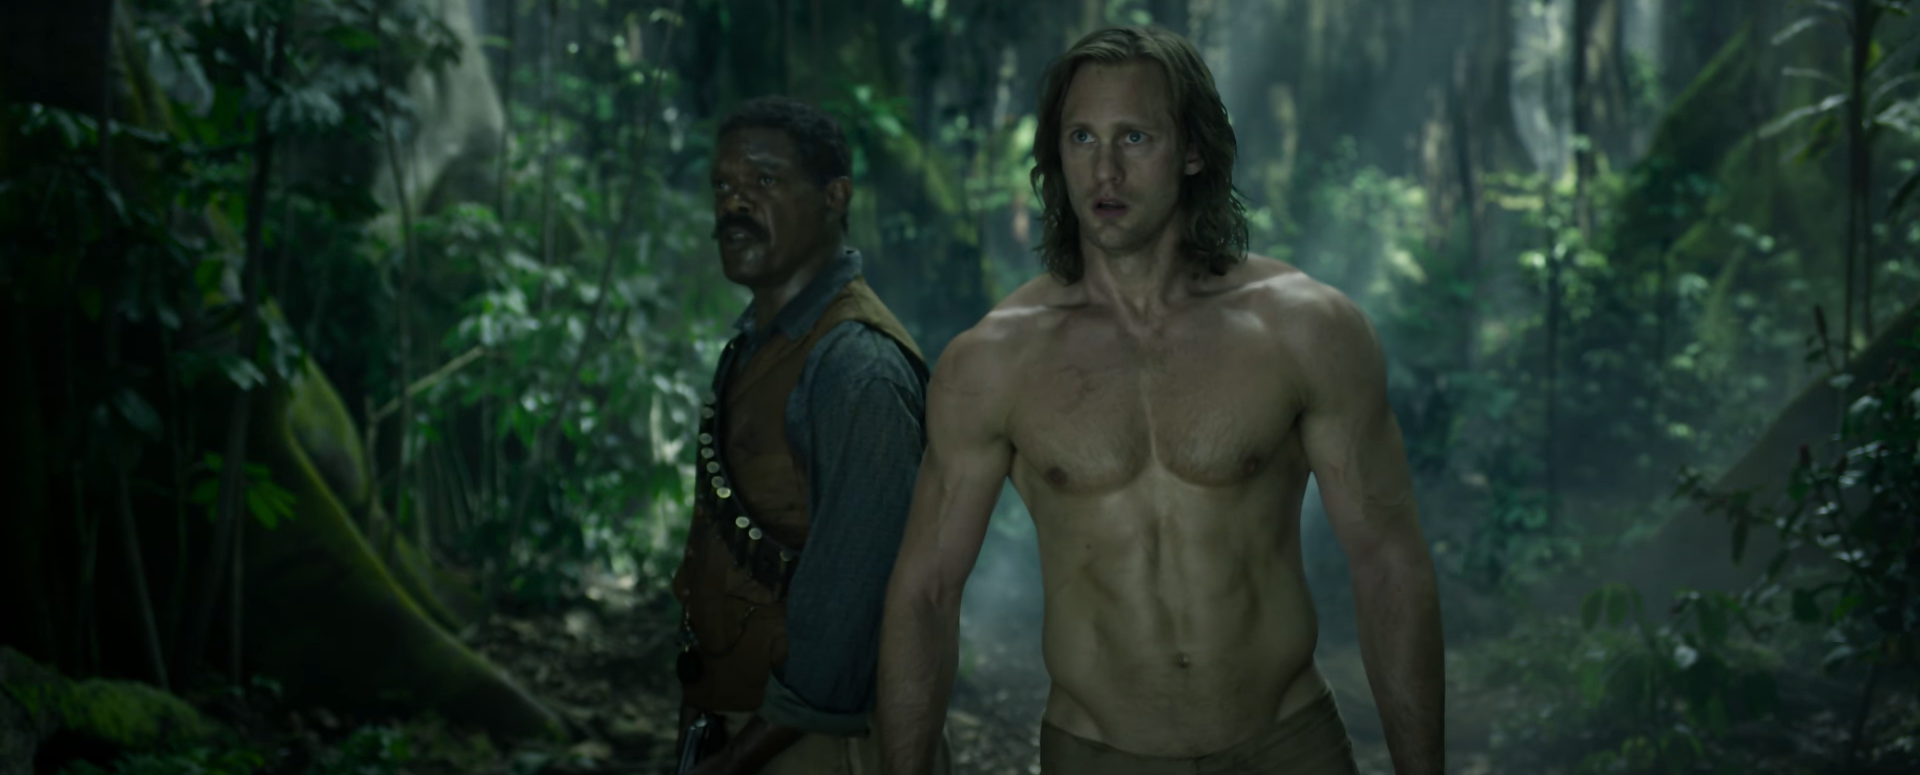 Tarzan : Sony acquiert les droits d'adaptation et veut réinventer le personnage